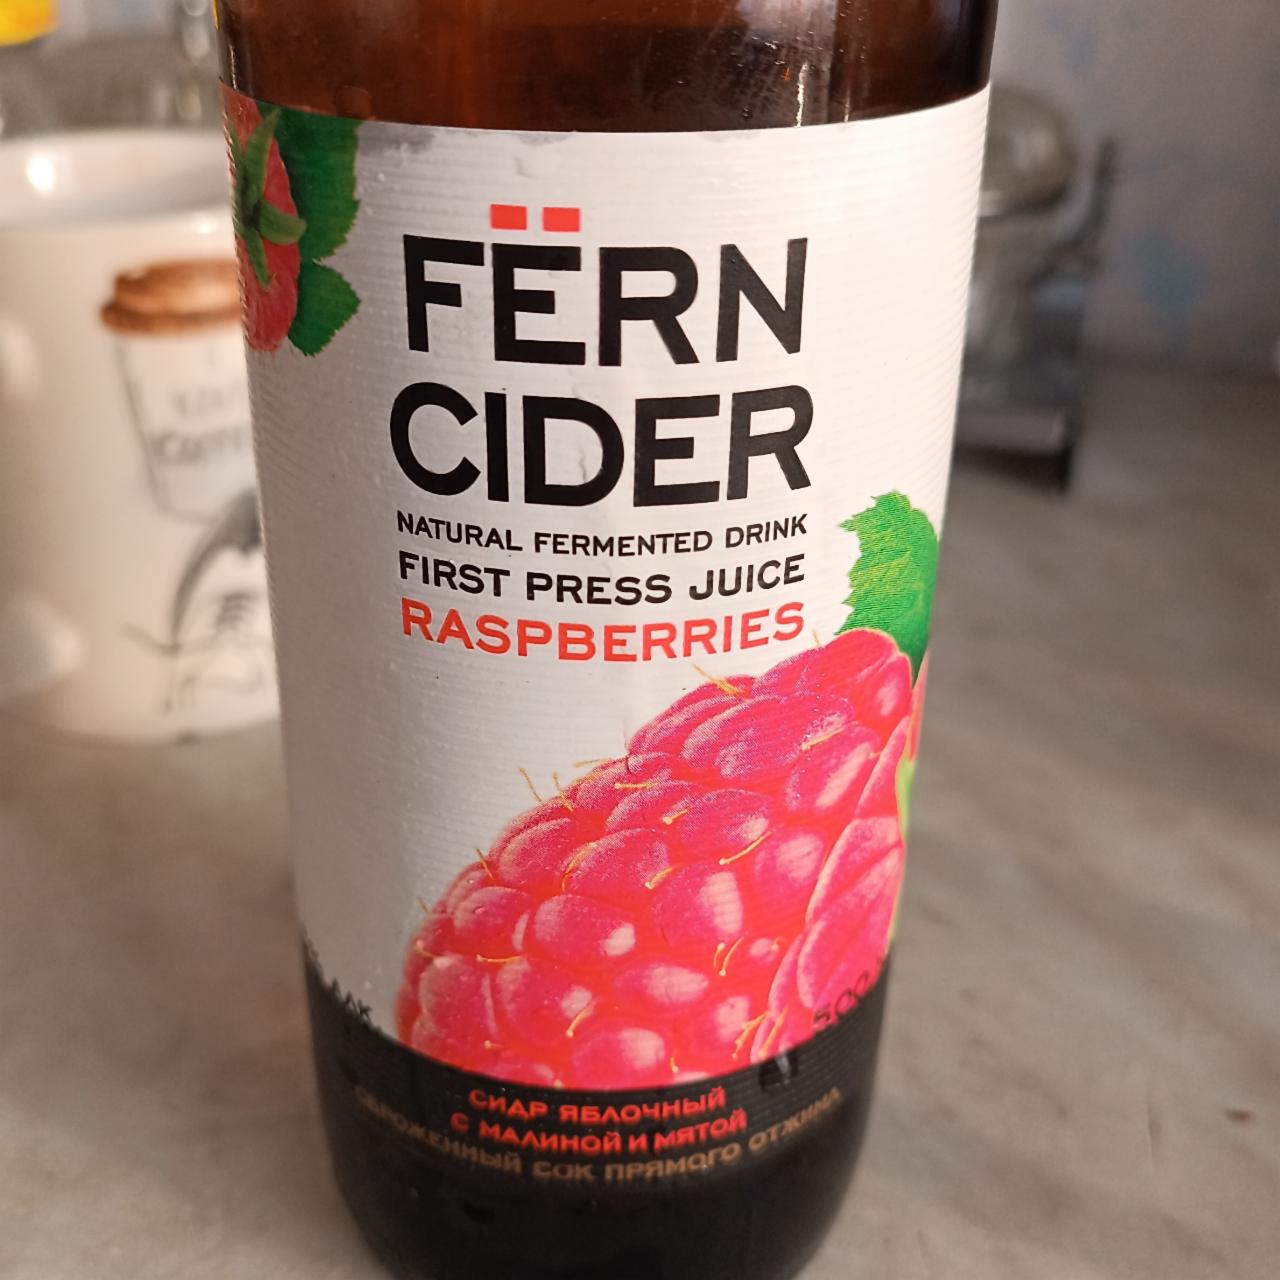 Фото - Сидр яблочный с малиной и мятой сок прямого отжима Fern cider